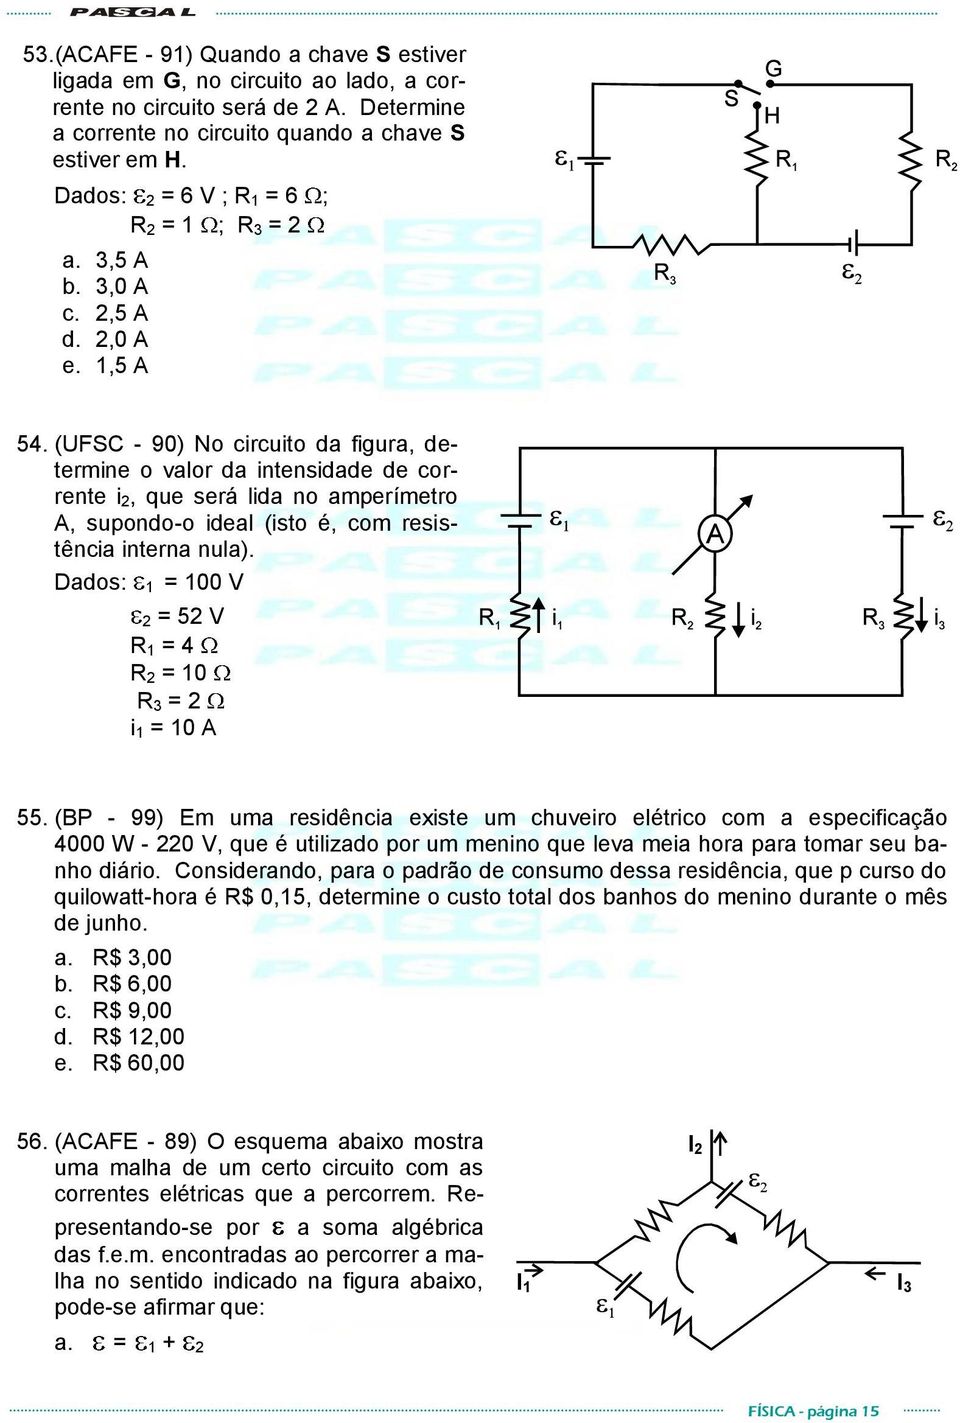 (UFSC - 90) No circuito da figura, determine o valor da intensidade de corrente i 2, que será lida no amperímetro A, supondo-o ideal (isto é, com resistência interna nula).